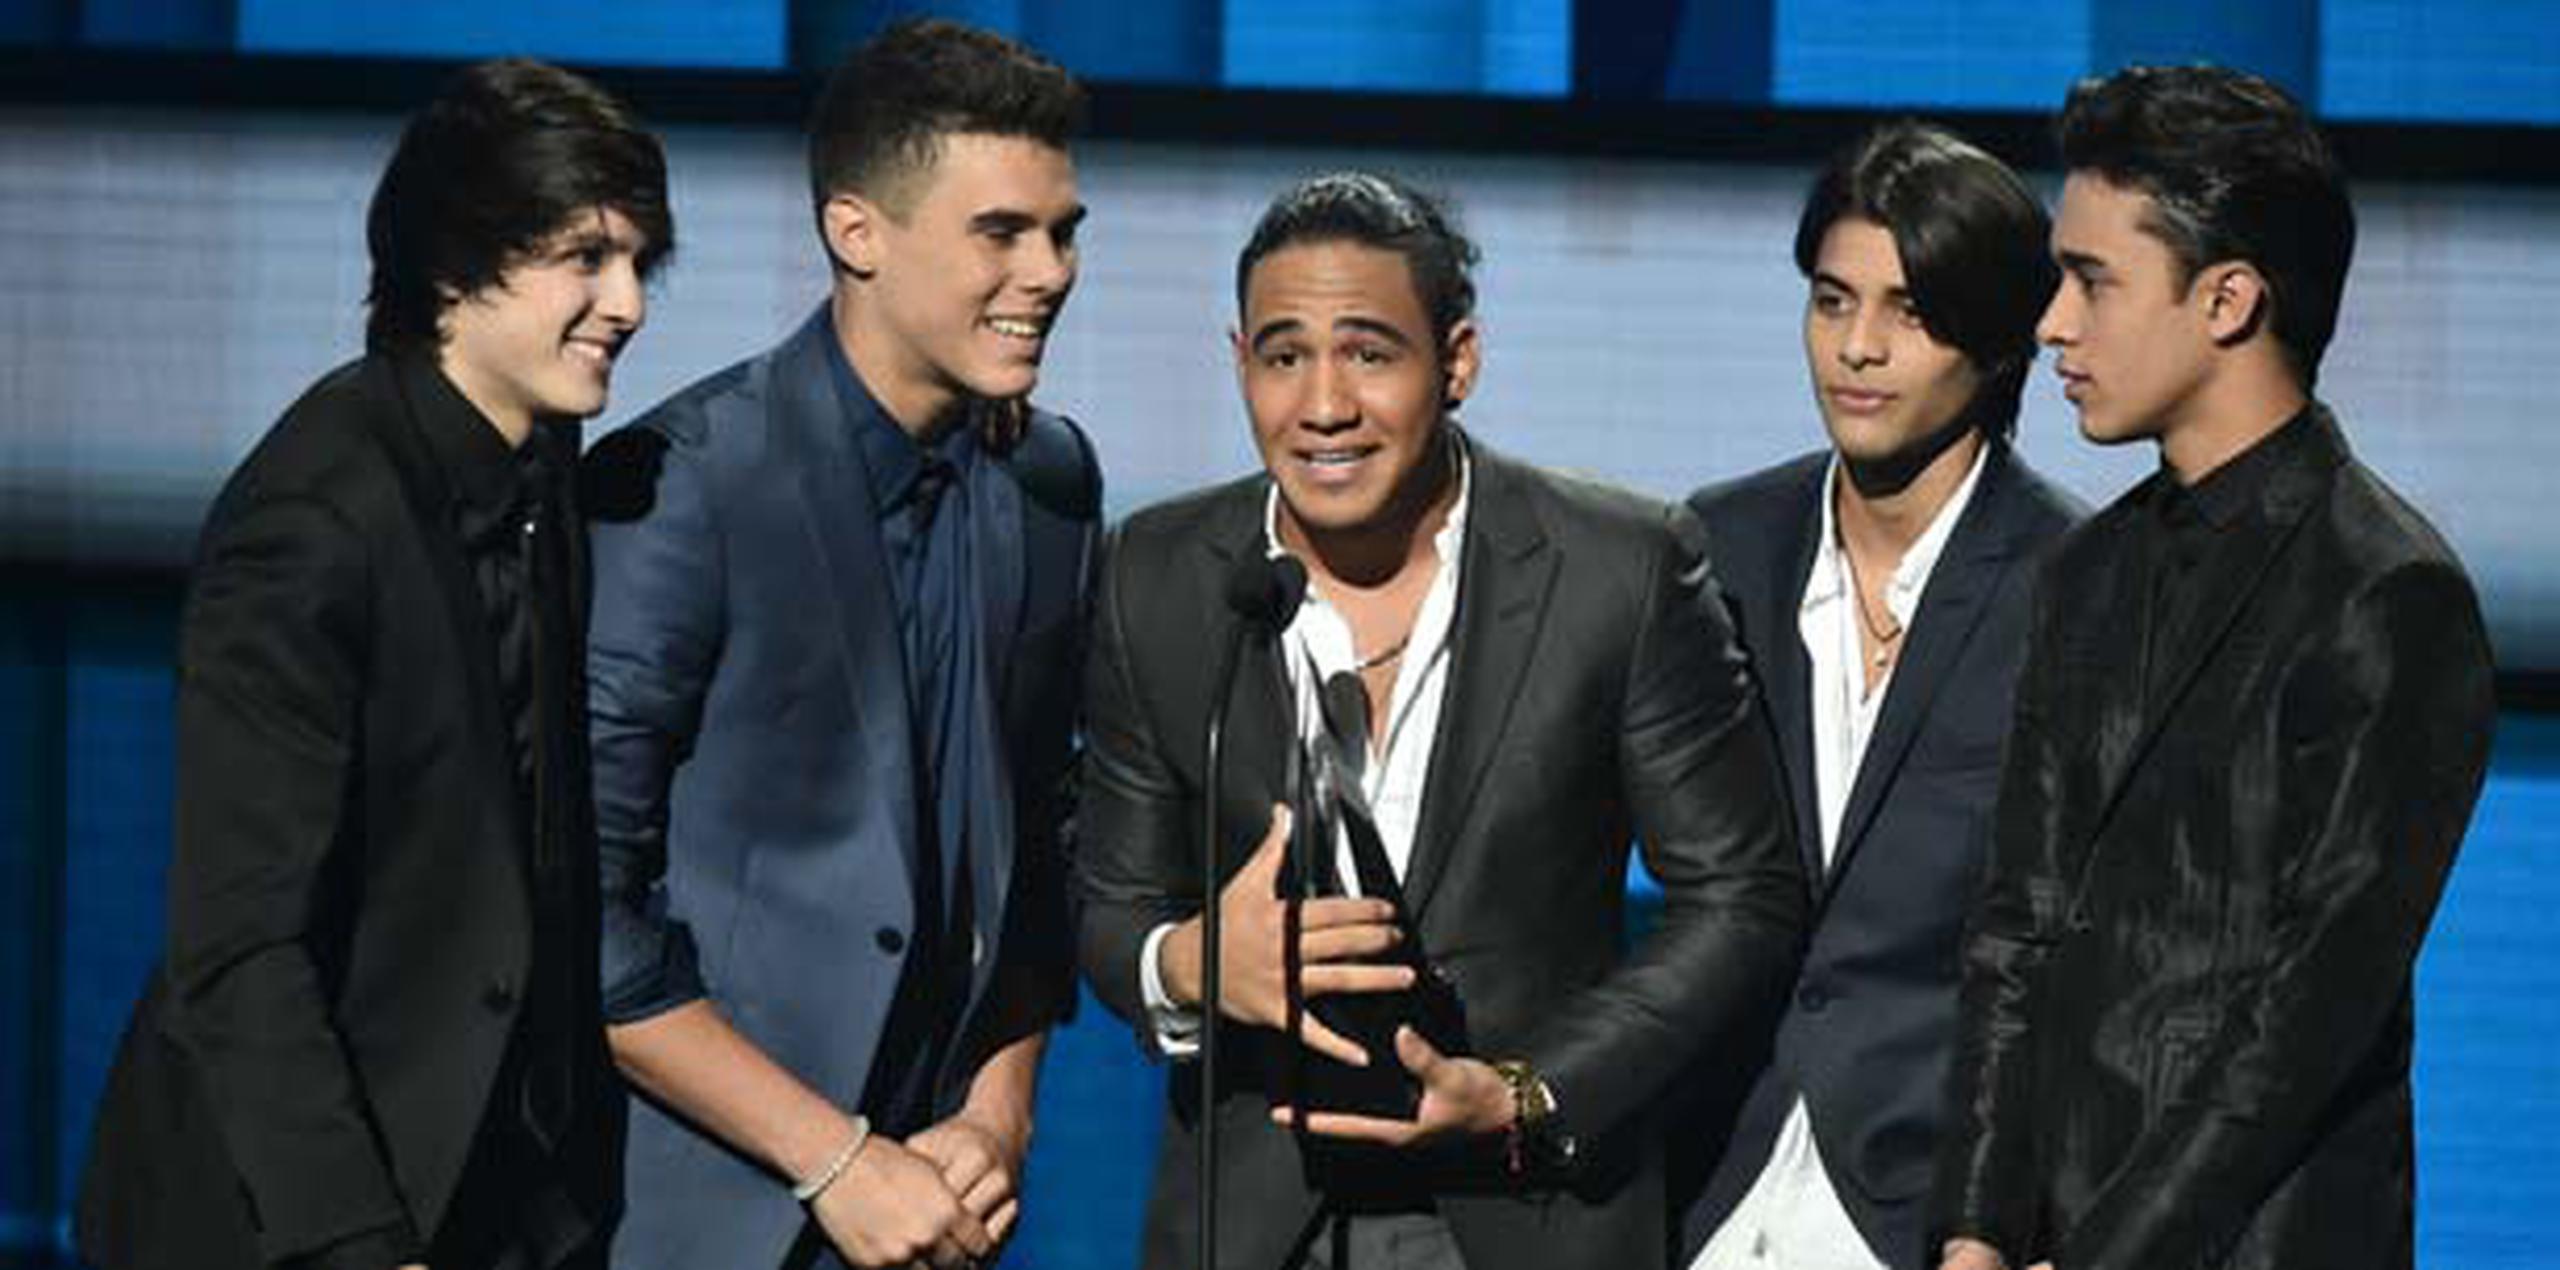 El grupo de chicos ganó la primera temporada de "La Banda", el reality creado por Simon Cowell y producido por Ricky Martin. (Vince Bucci/Invision/AP)